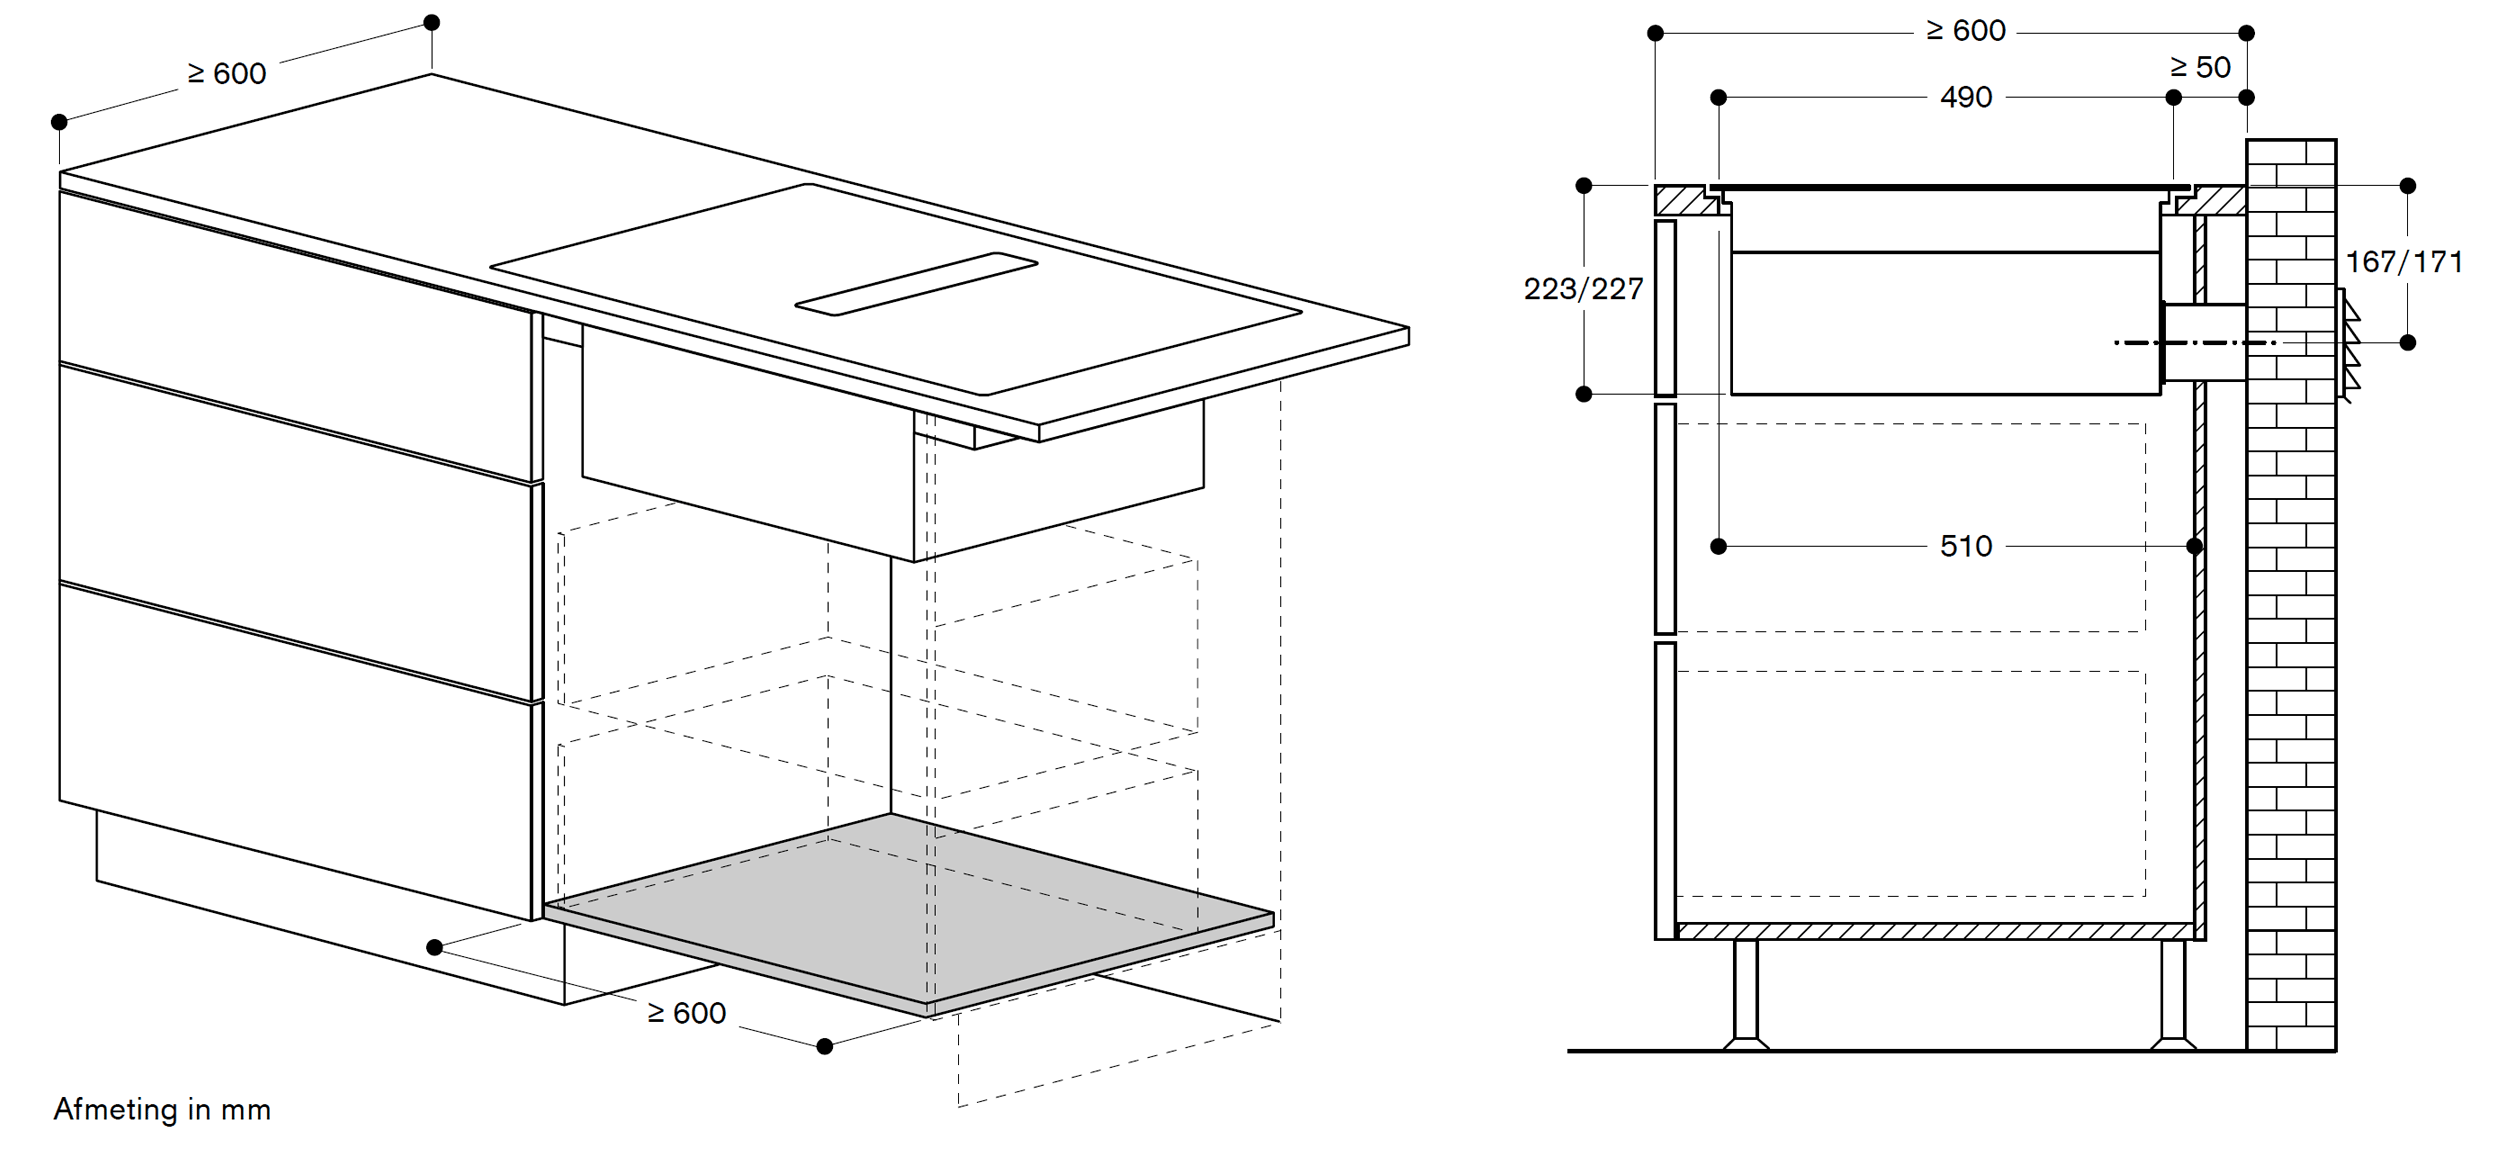 Inbouwsituatie luchtafvoer: 60 cm diep werkblad (direct naar buiten)